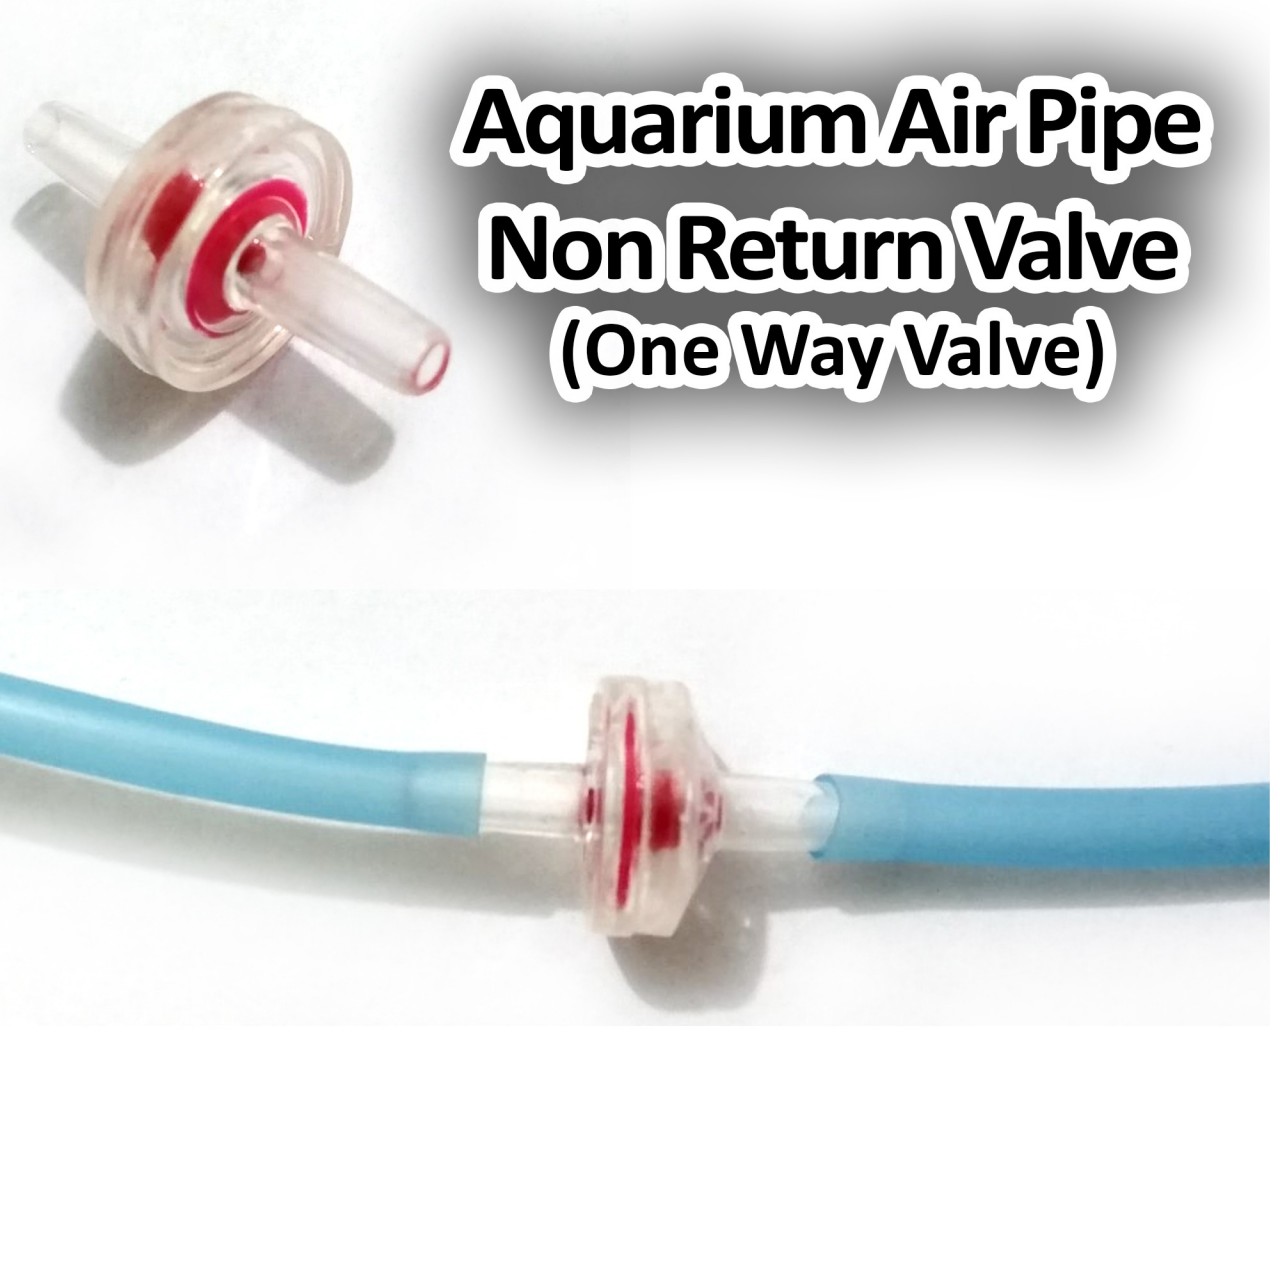 Non Return Valve for Fish Aquarium Air Pump Pipe - One Way Valve for Aquarium Pipe